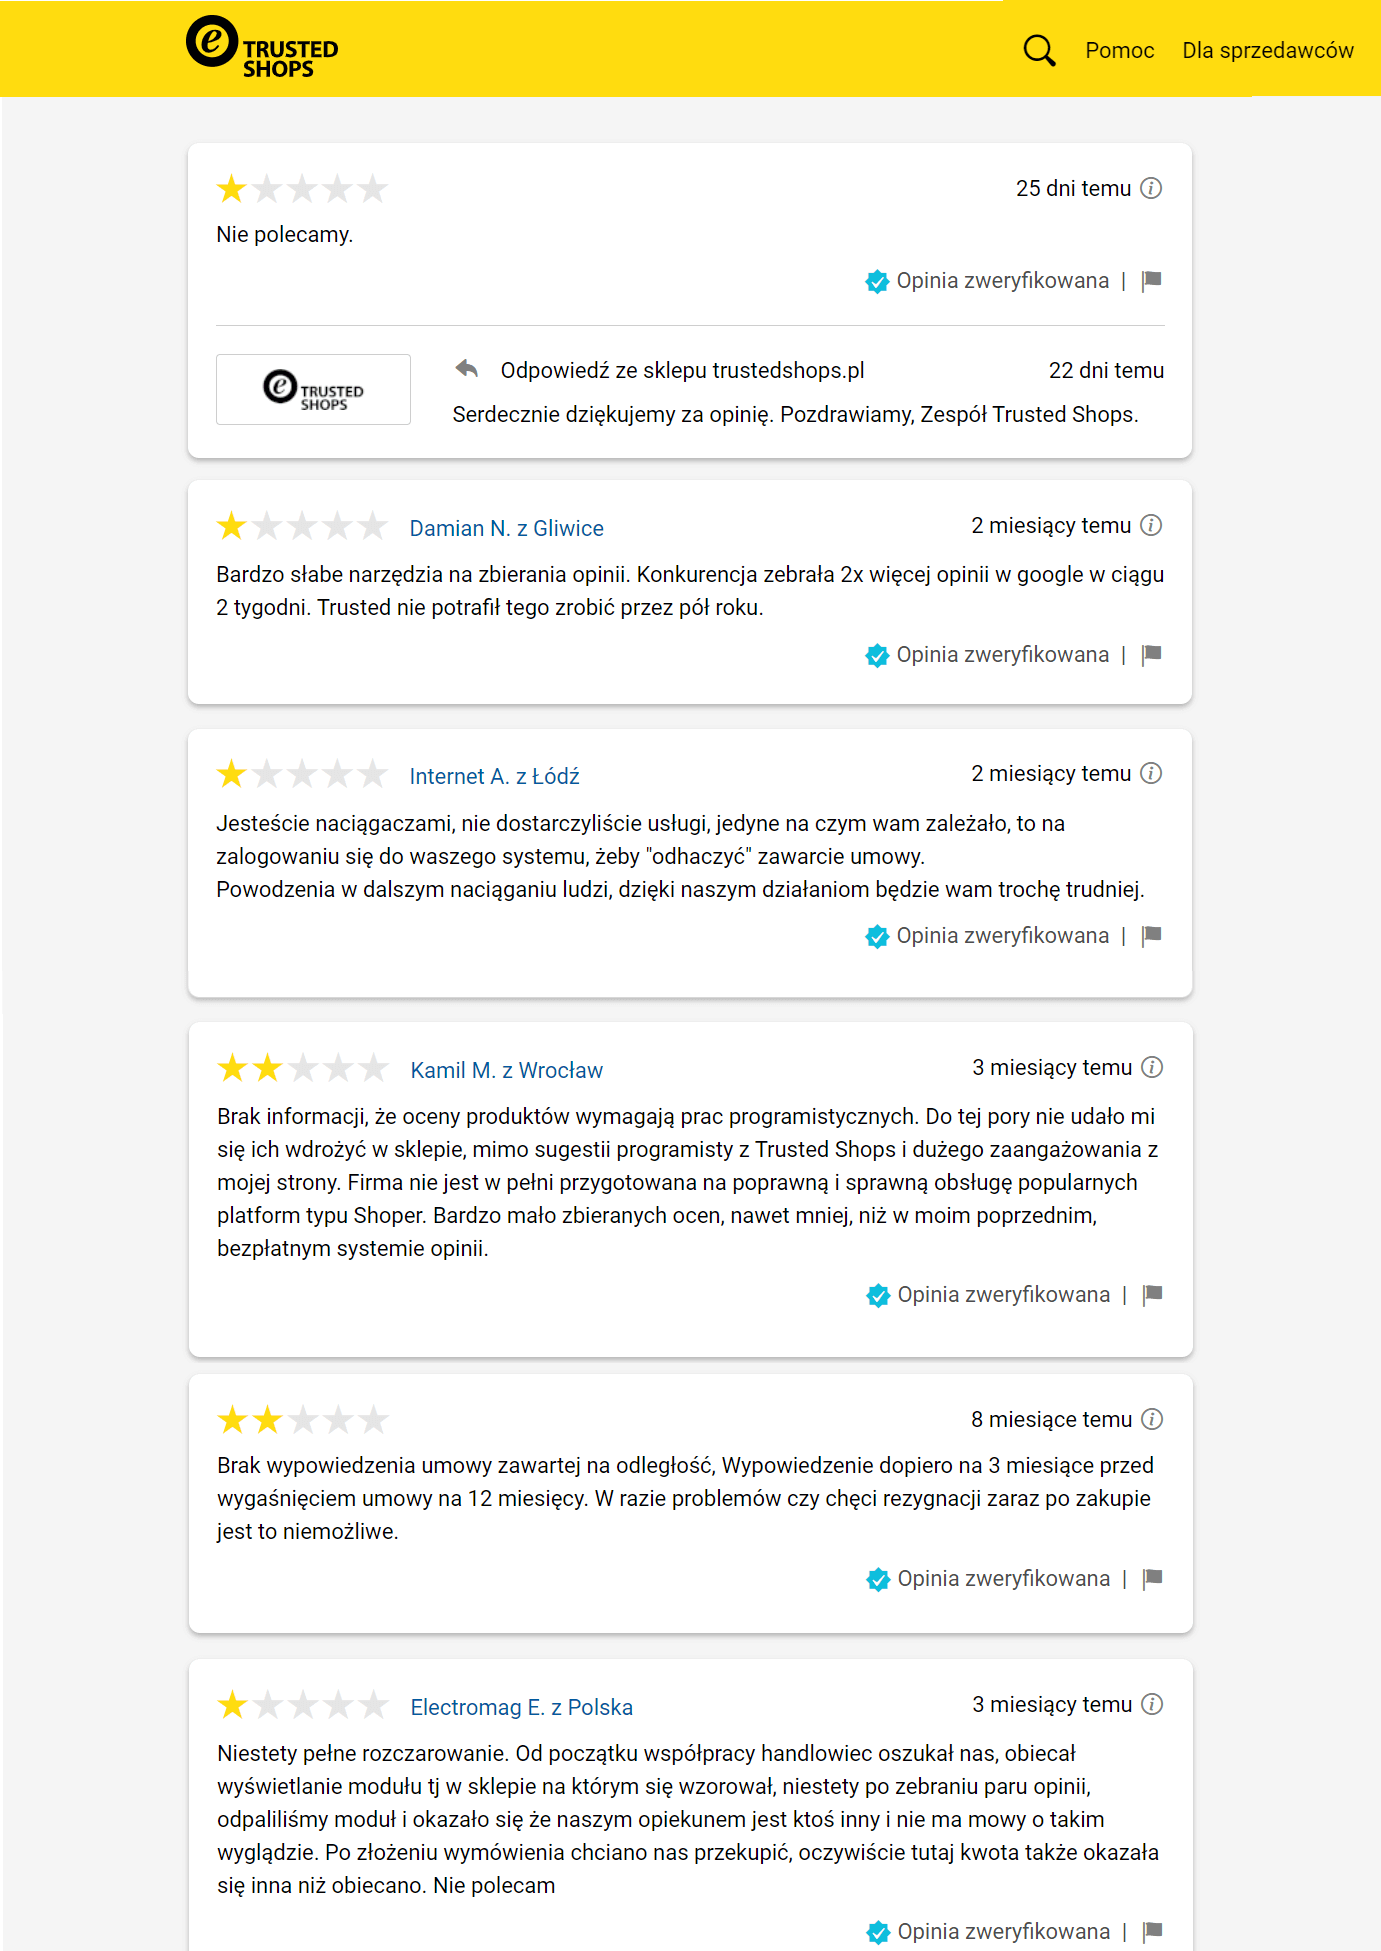 Negatwyne recenzje Trustedshops